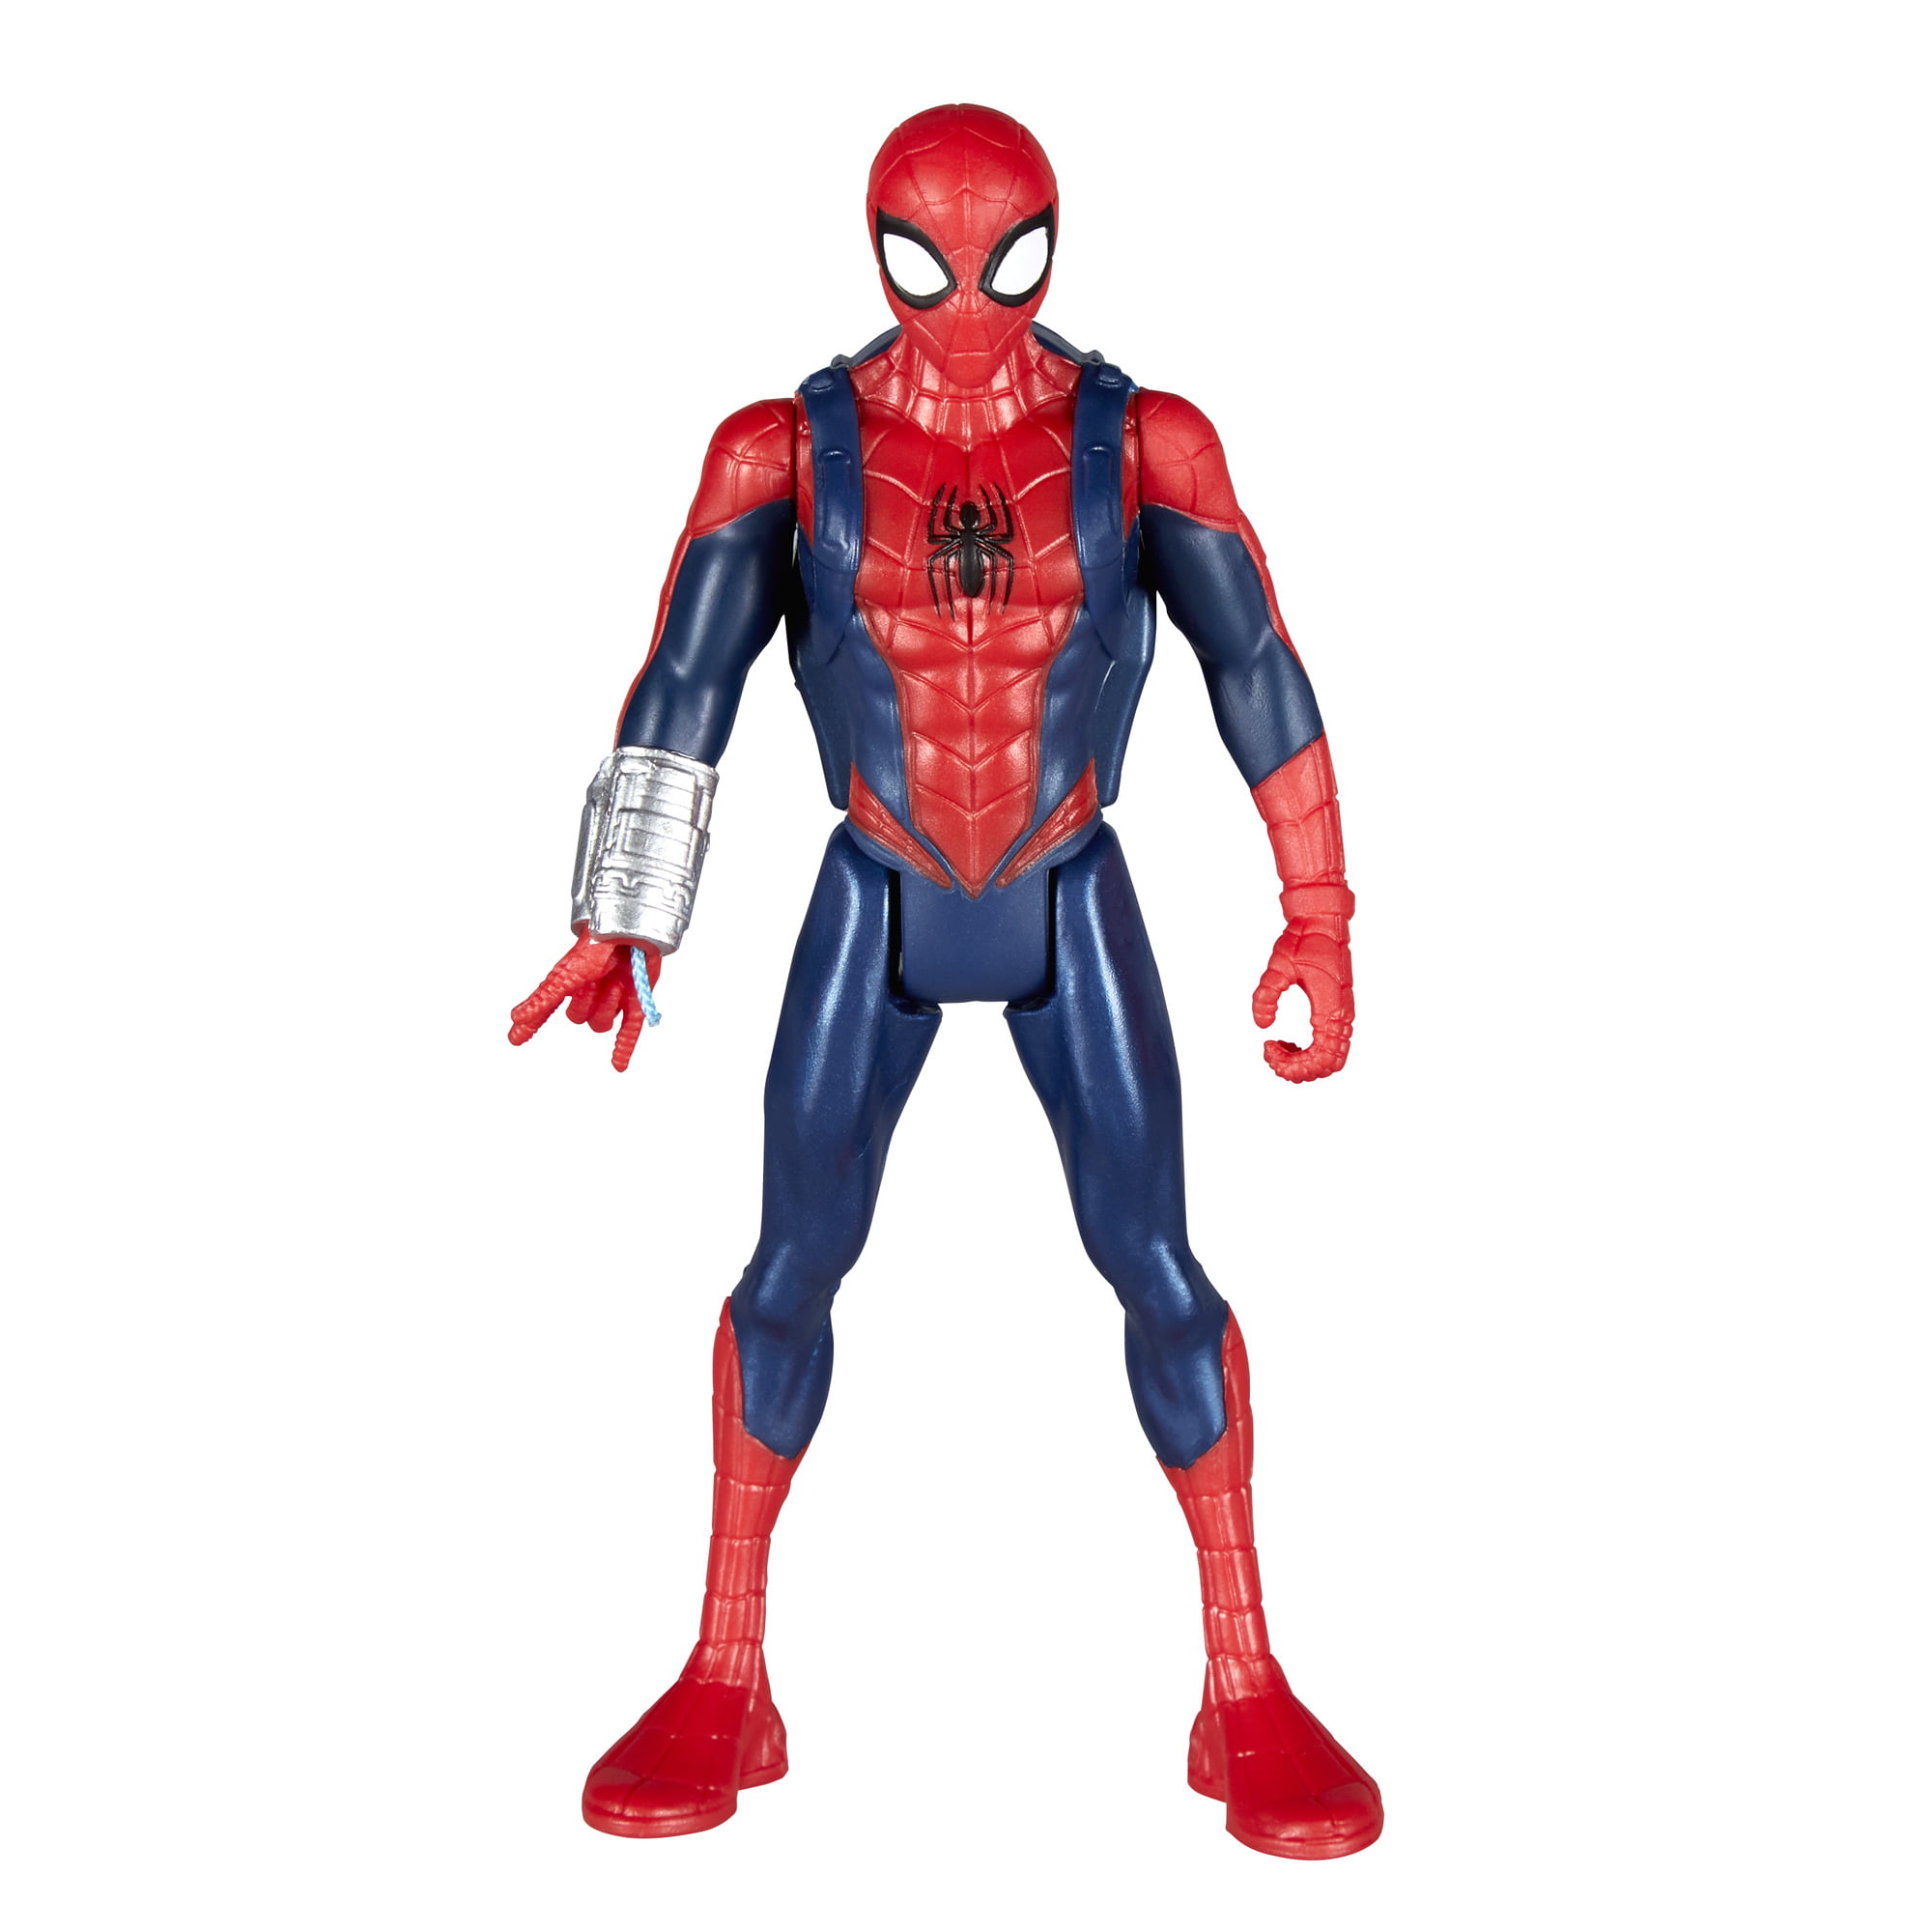 ZT Spider-Man Into The Spider-Verse 7 inches Spider-Man Action Figure